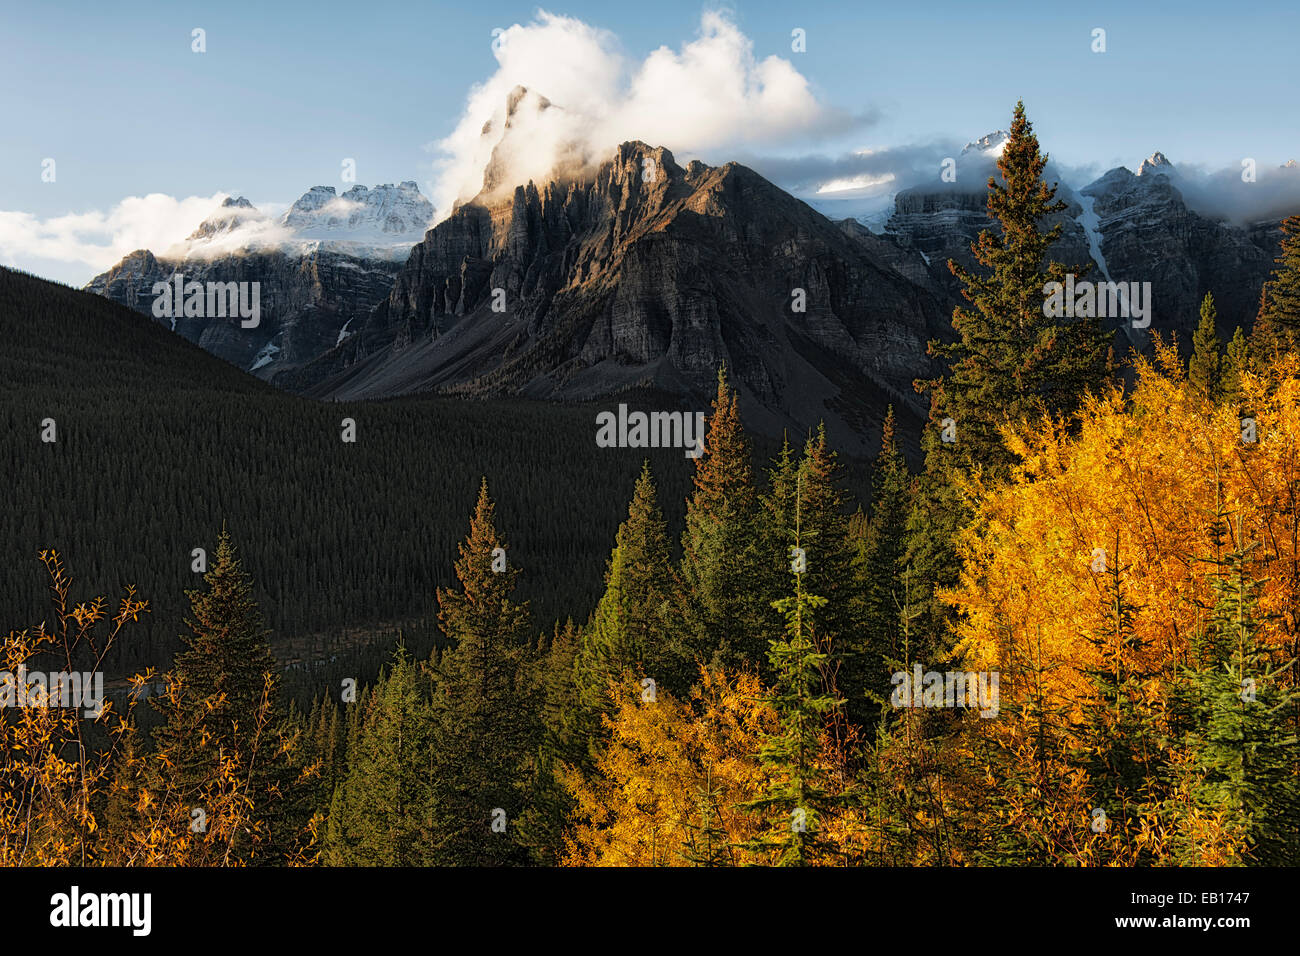 Matin d'automne sur la vallée de dix pics dans les Rocheuses canadiennes de l'Alberta et le parc national Banff. Banque D'Images